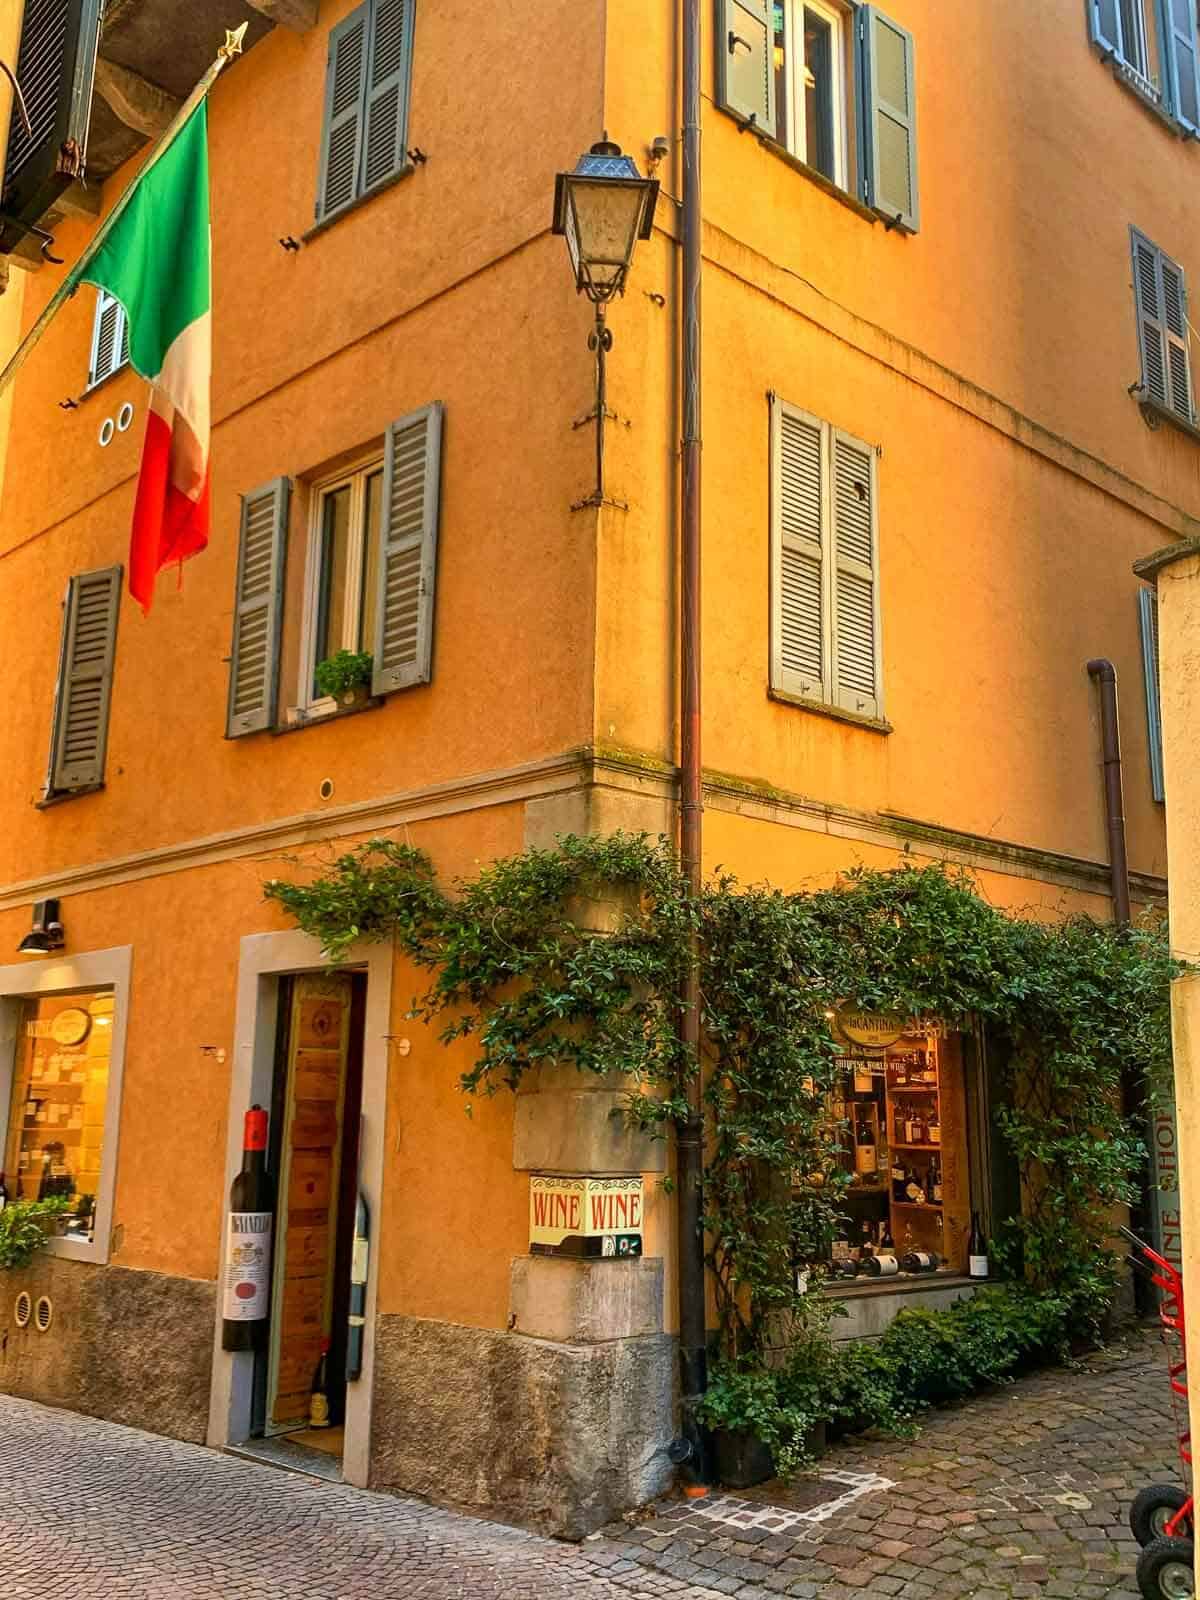 corner in Cernobbio town with Italian flag.